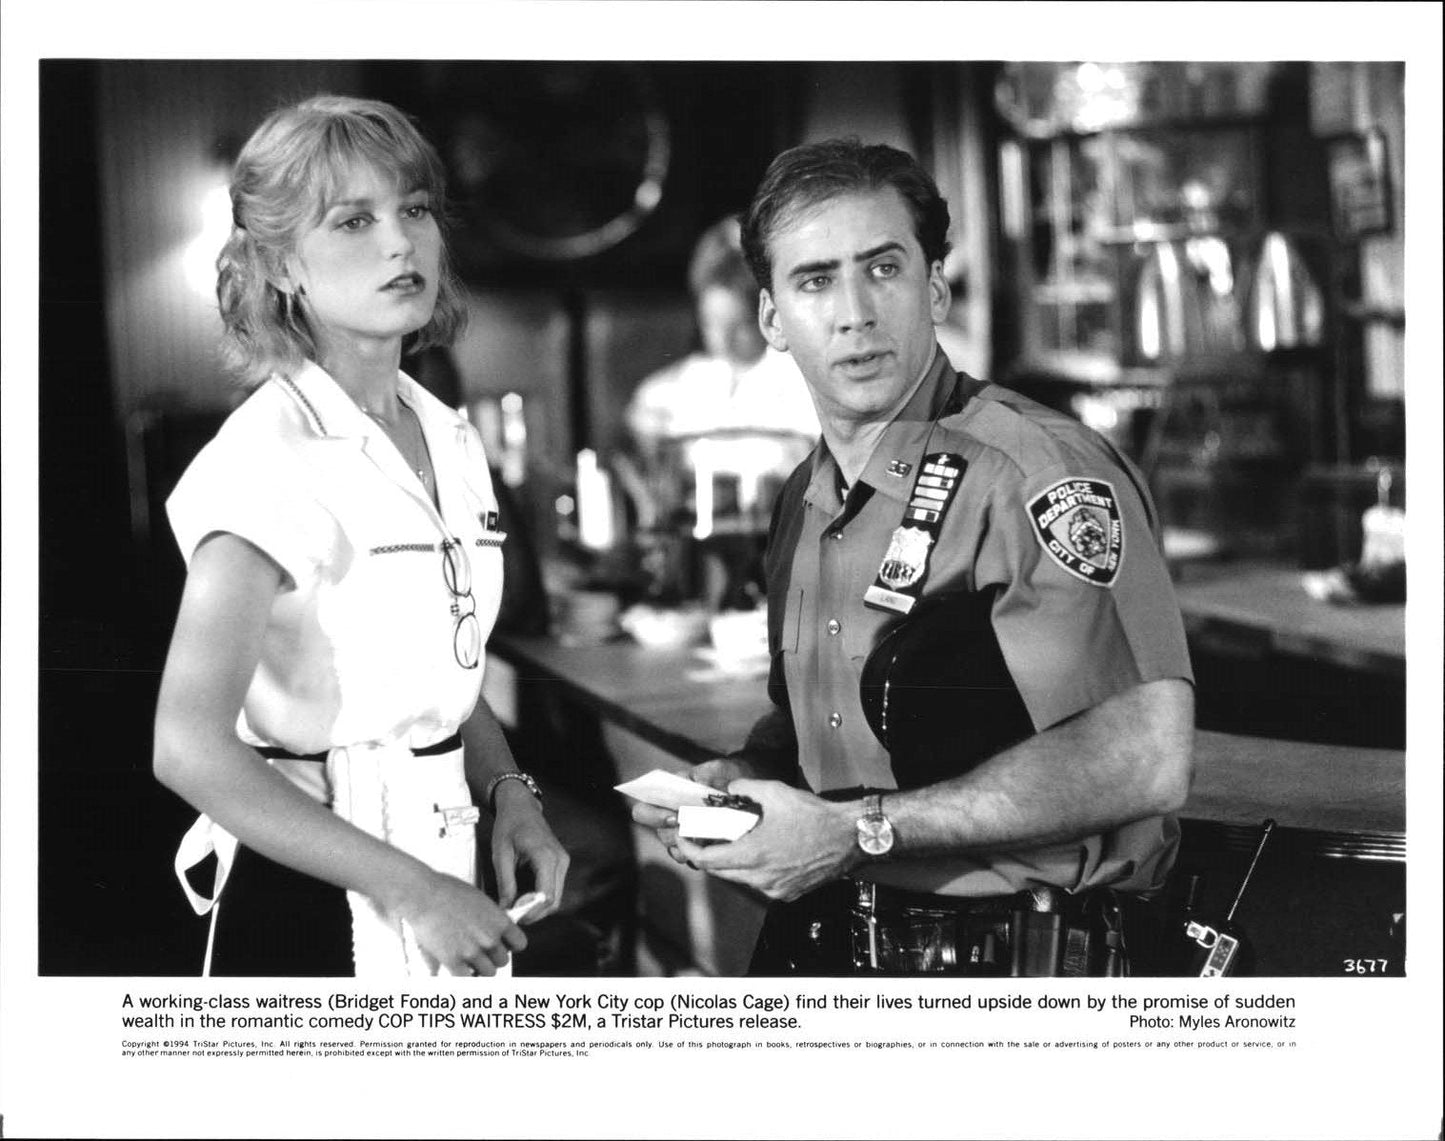 Nicolas Cage IT COULD HAPPEN TO YOU Bridget Fonda original press photo 1994